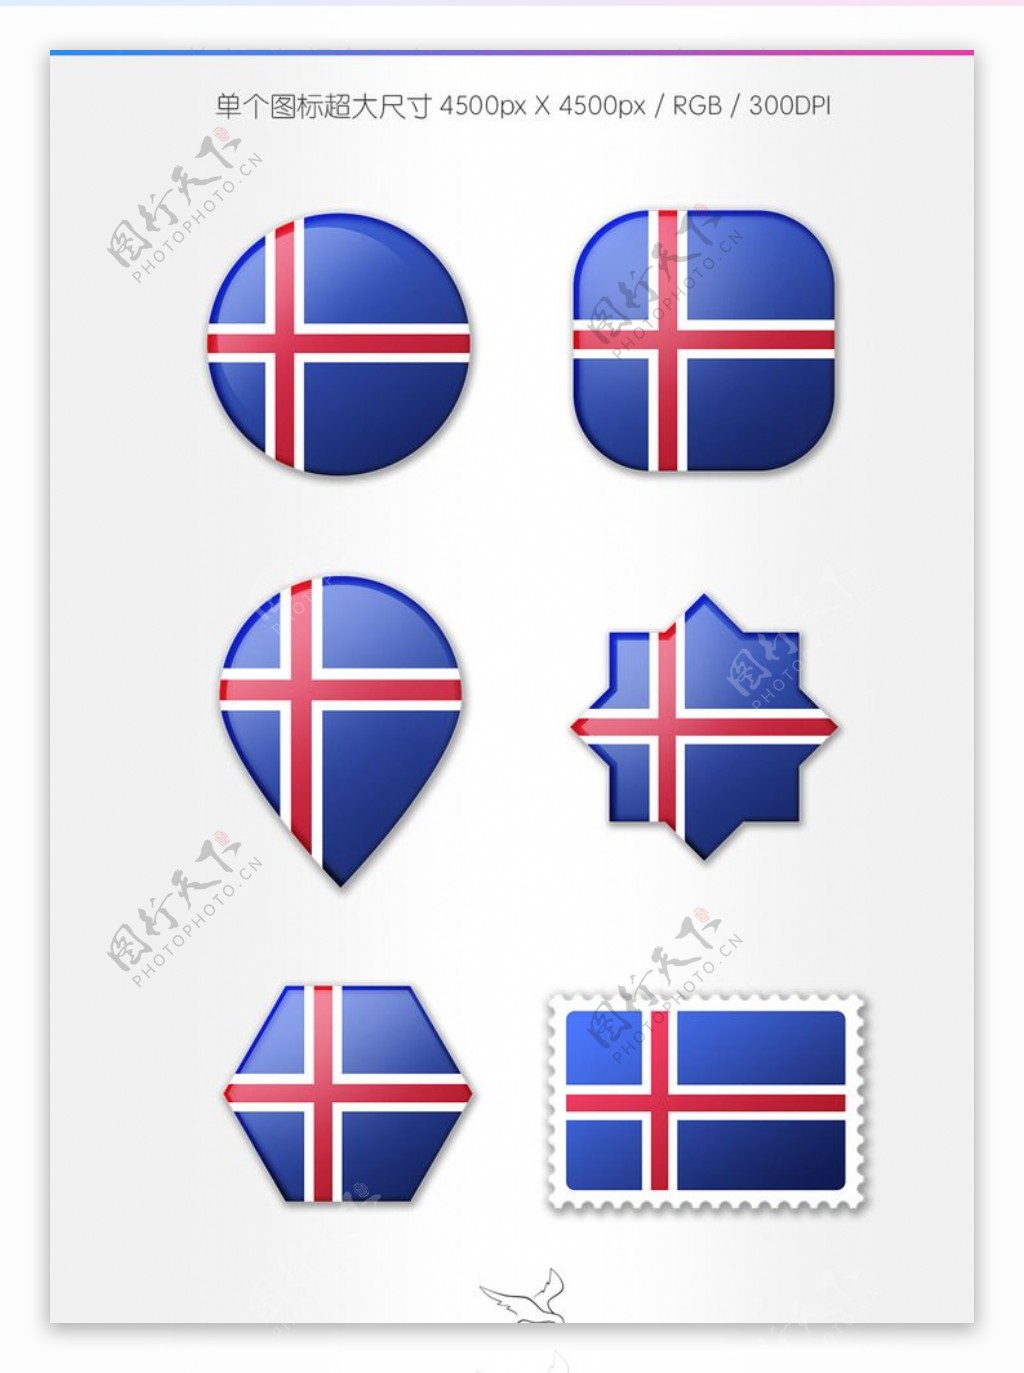 冰岛国旗图标